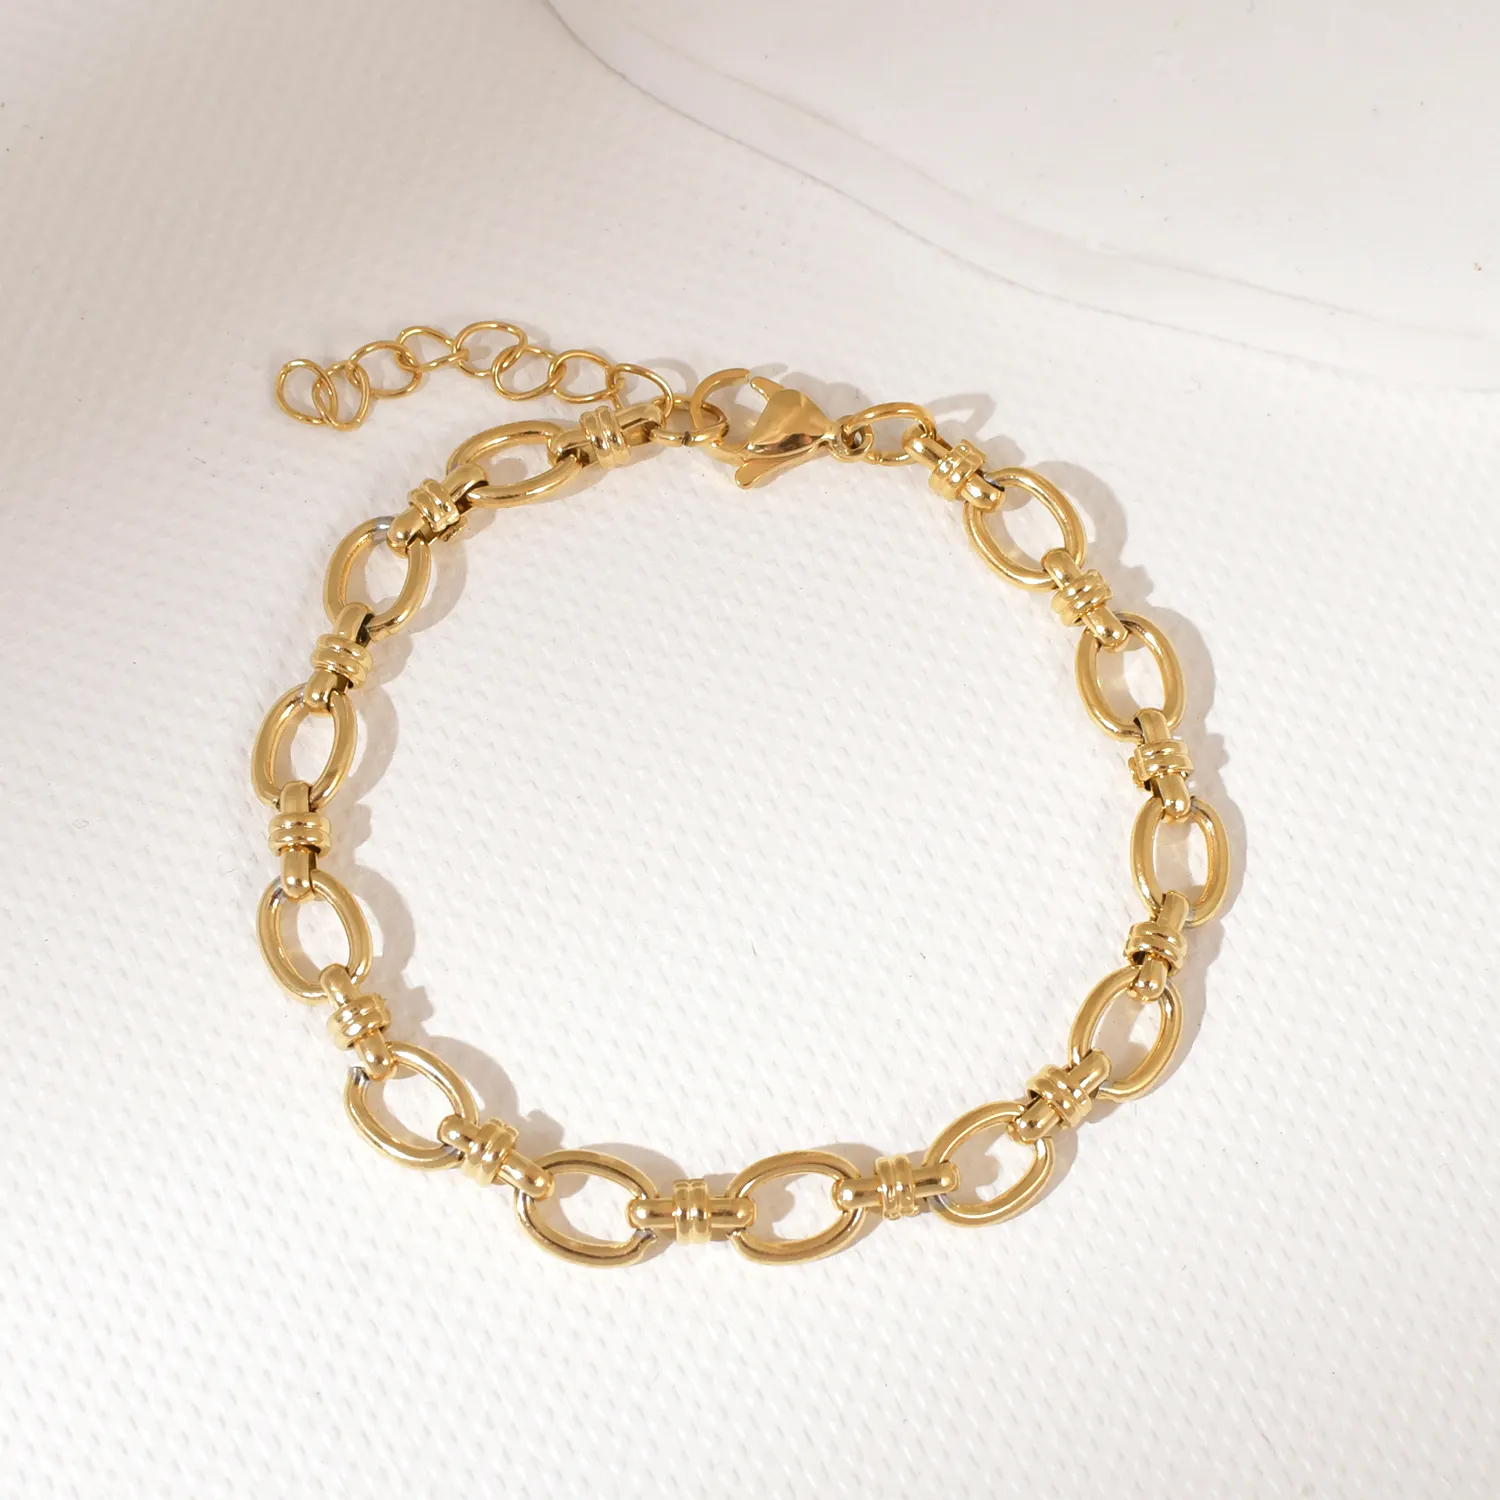 Ingrosso stile Hip hop gioielli impermeabili fibbia a catena incrociata 18K PVD oro placcato in acciaio inox moda donna bracciale